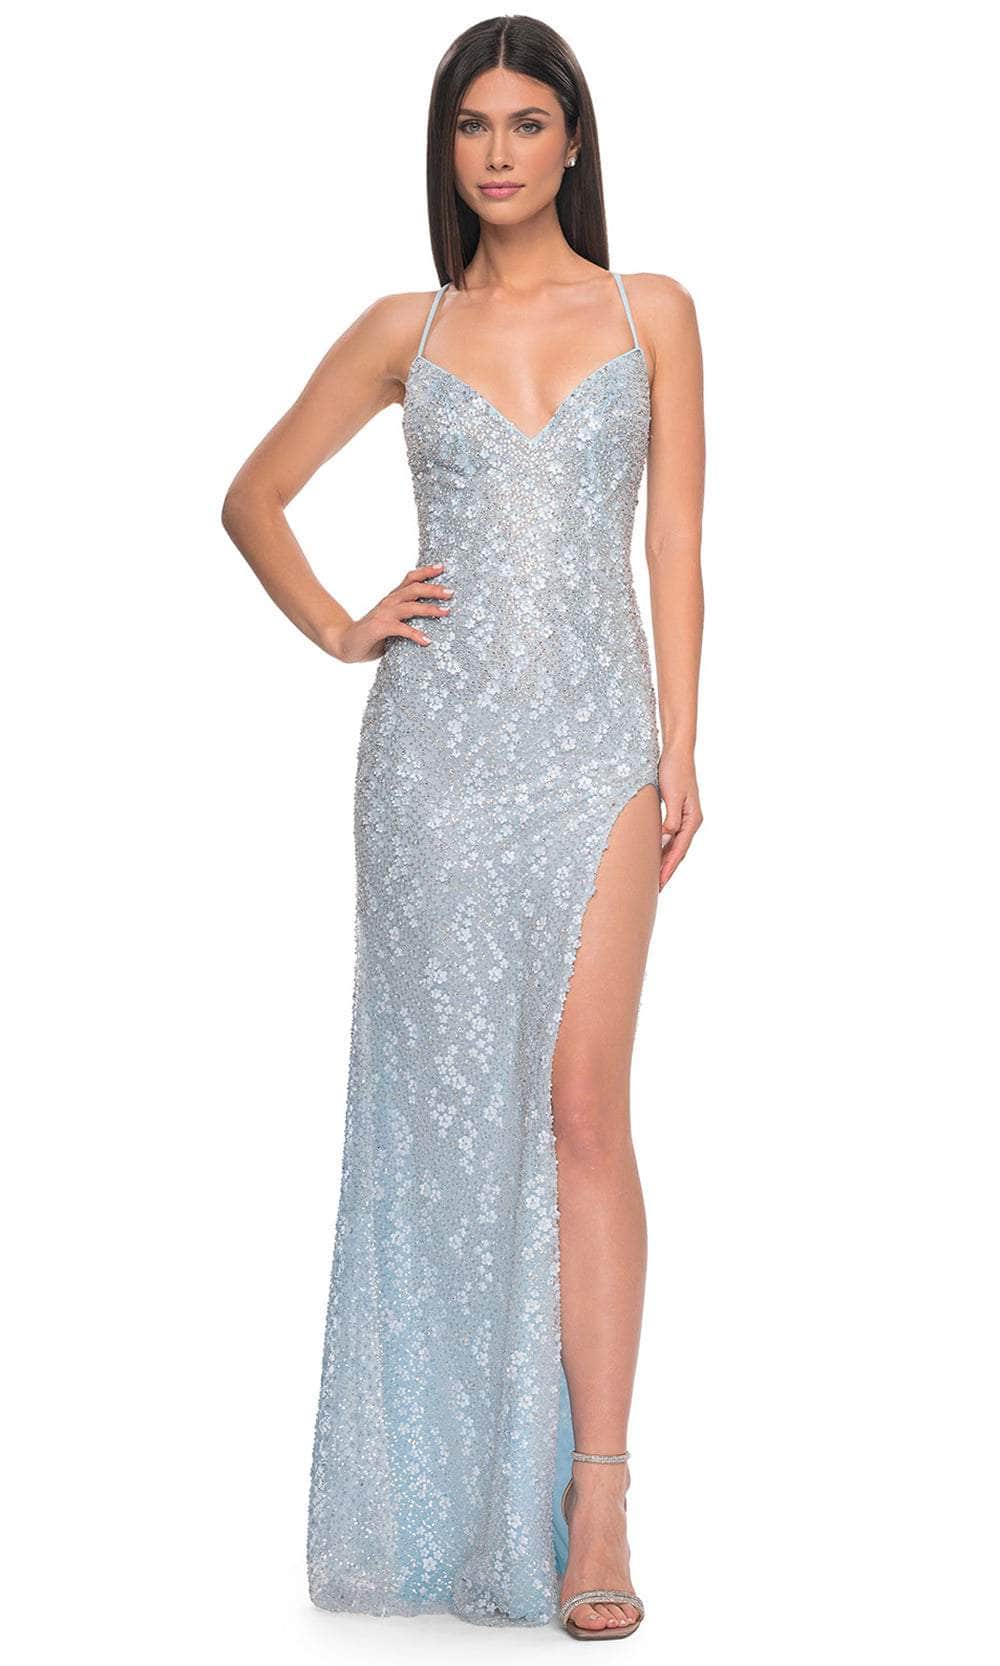 La Femme 31993 - Embellished Lace Prom Dress Evening Dresses 00 /  Light Blue